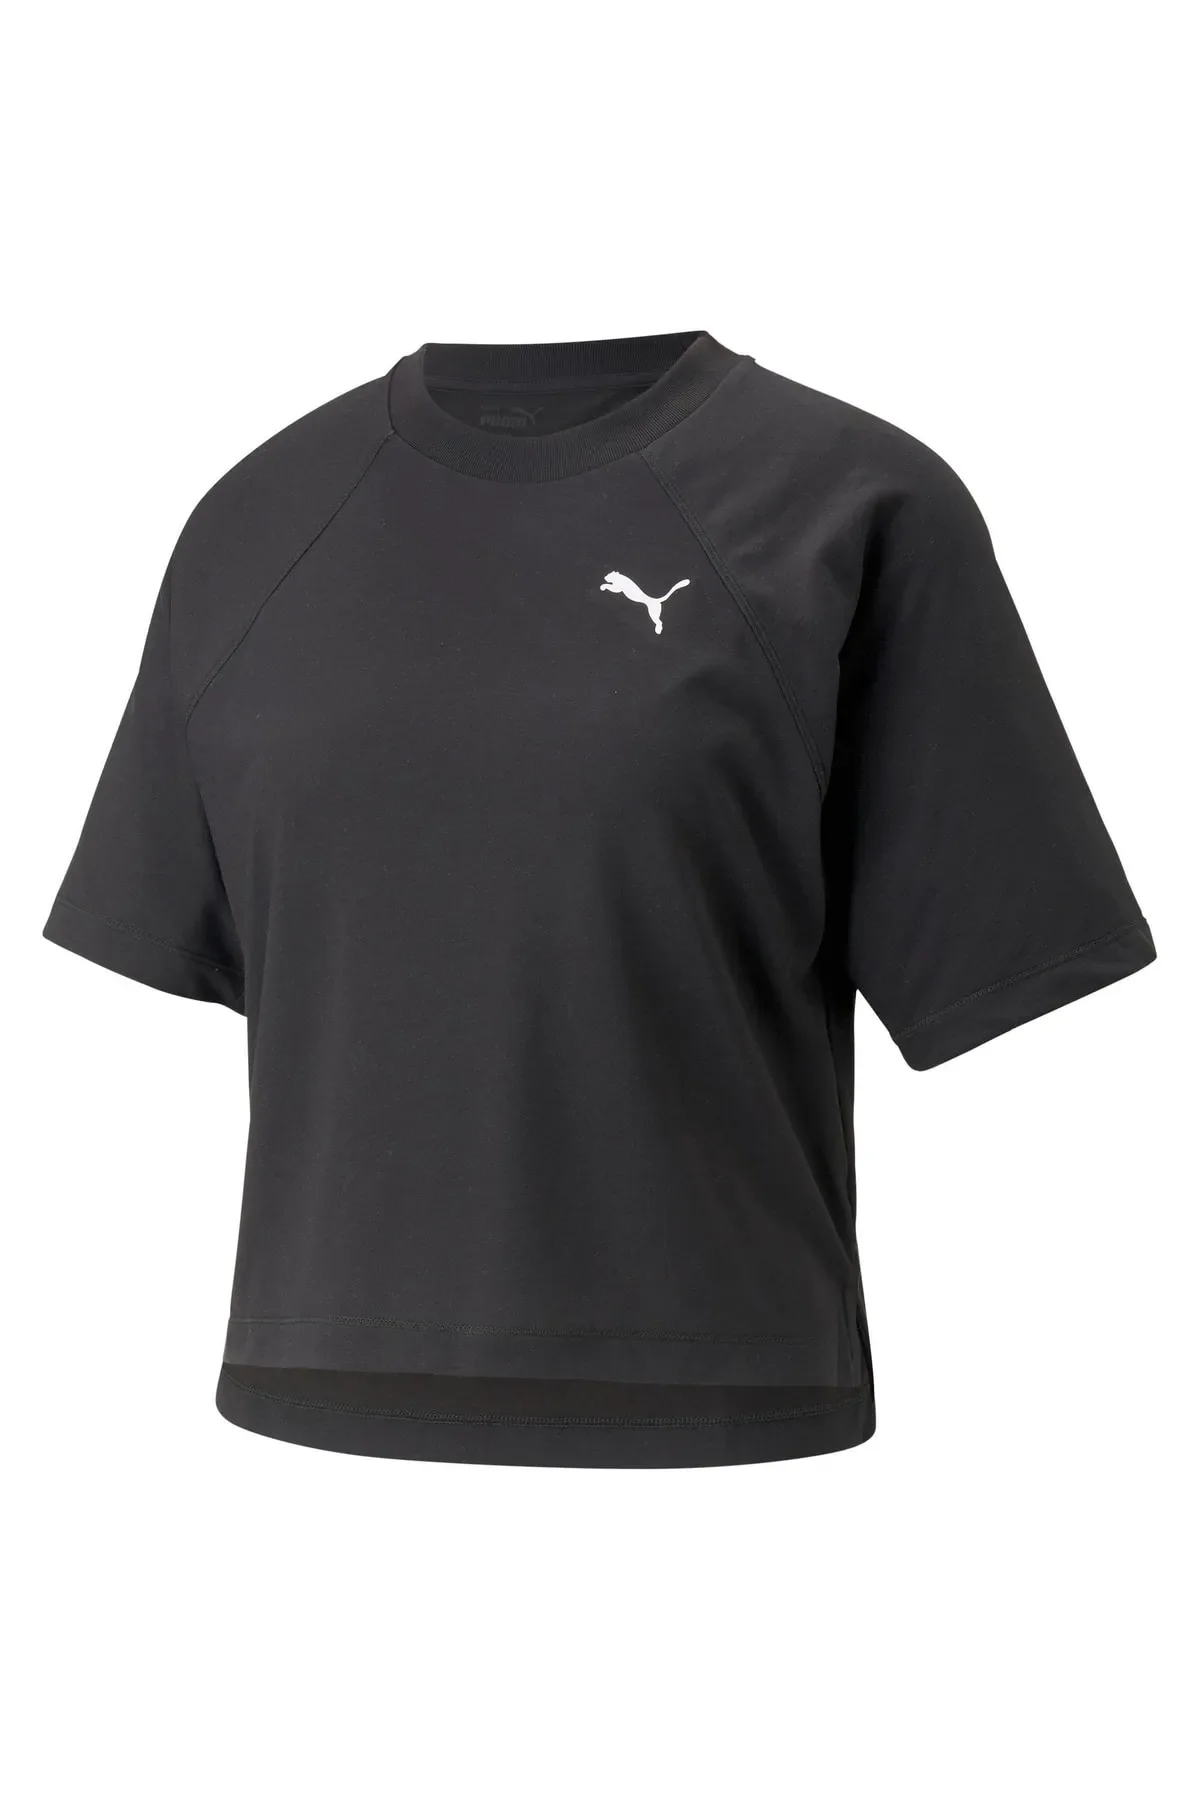 Modern Sports Tee Kadın T-shirt 673095-Siyah - 1